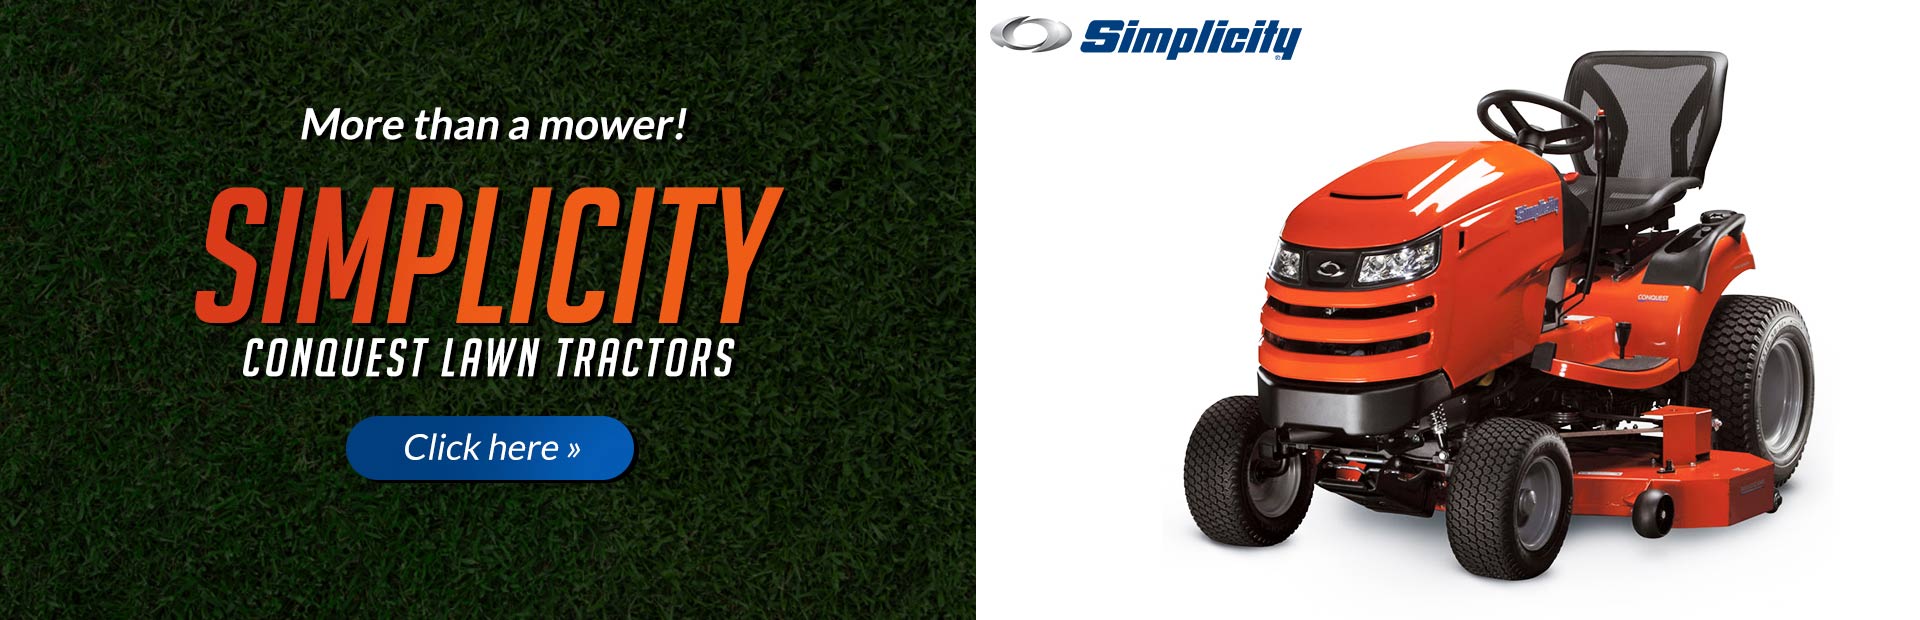 simplicity lawn tractors